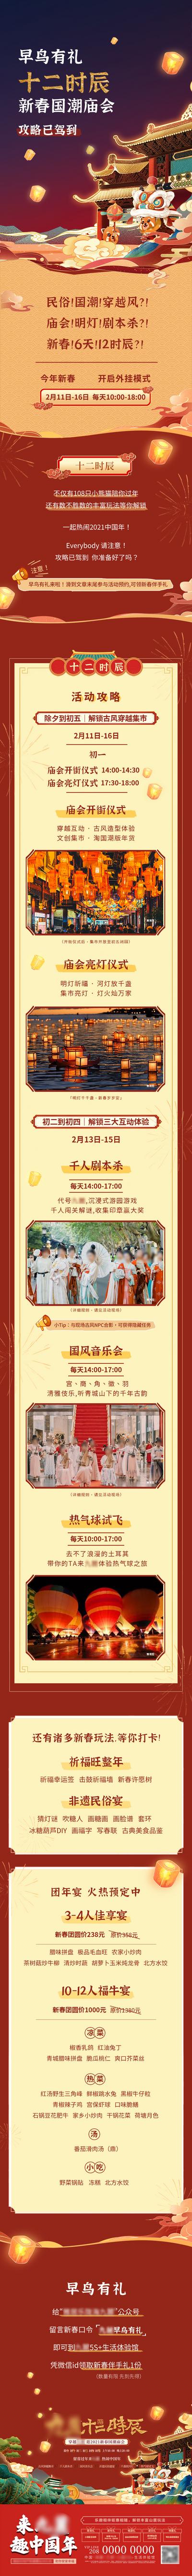 南门网 专题设计 长图 中国传统节日 春节 庙会 创意 喜庆